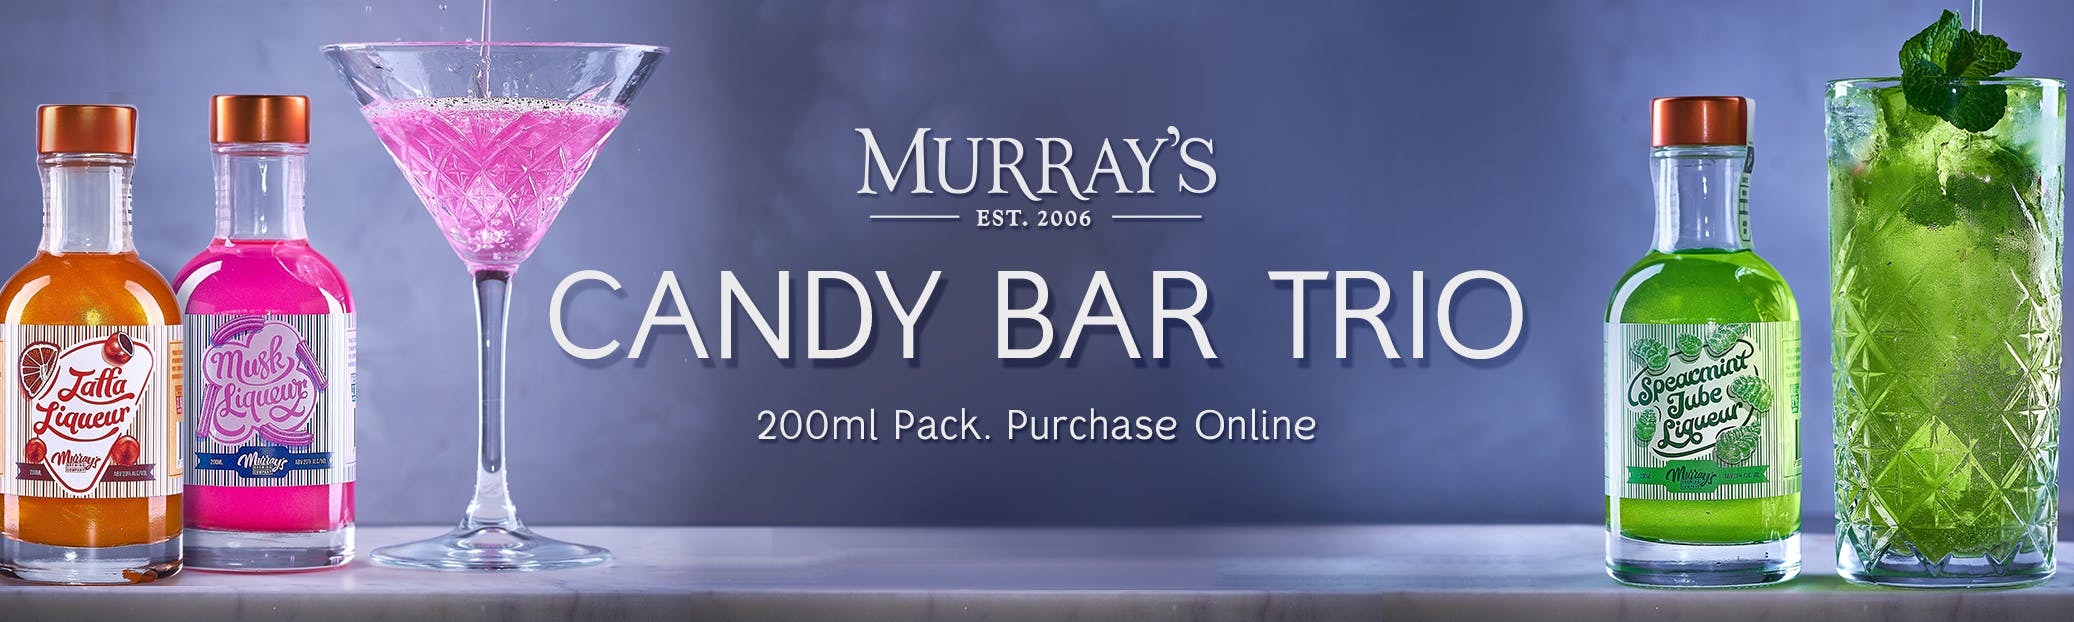 Candy Bar Murrays Online Shop